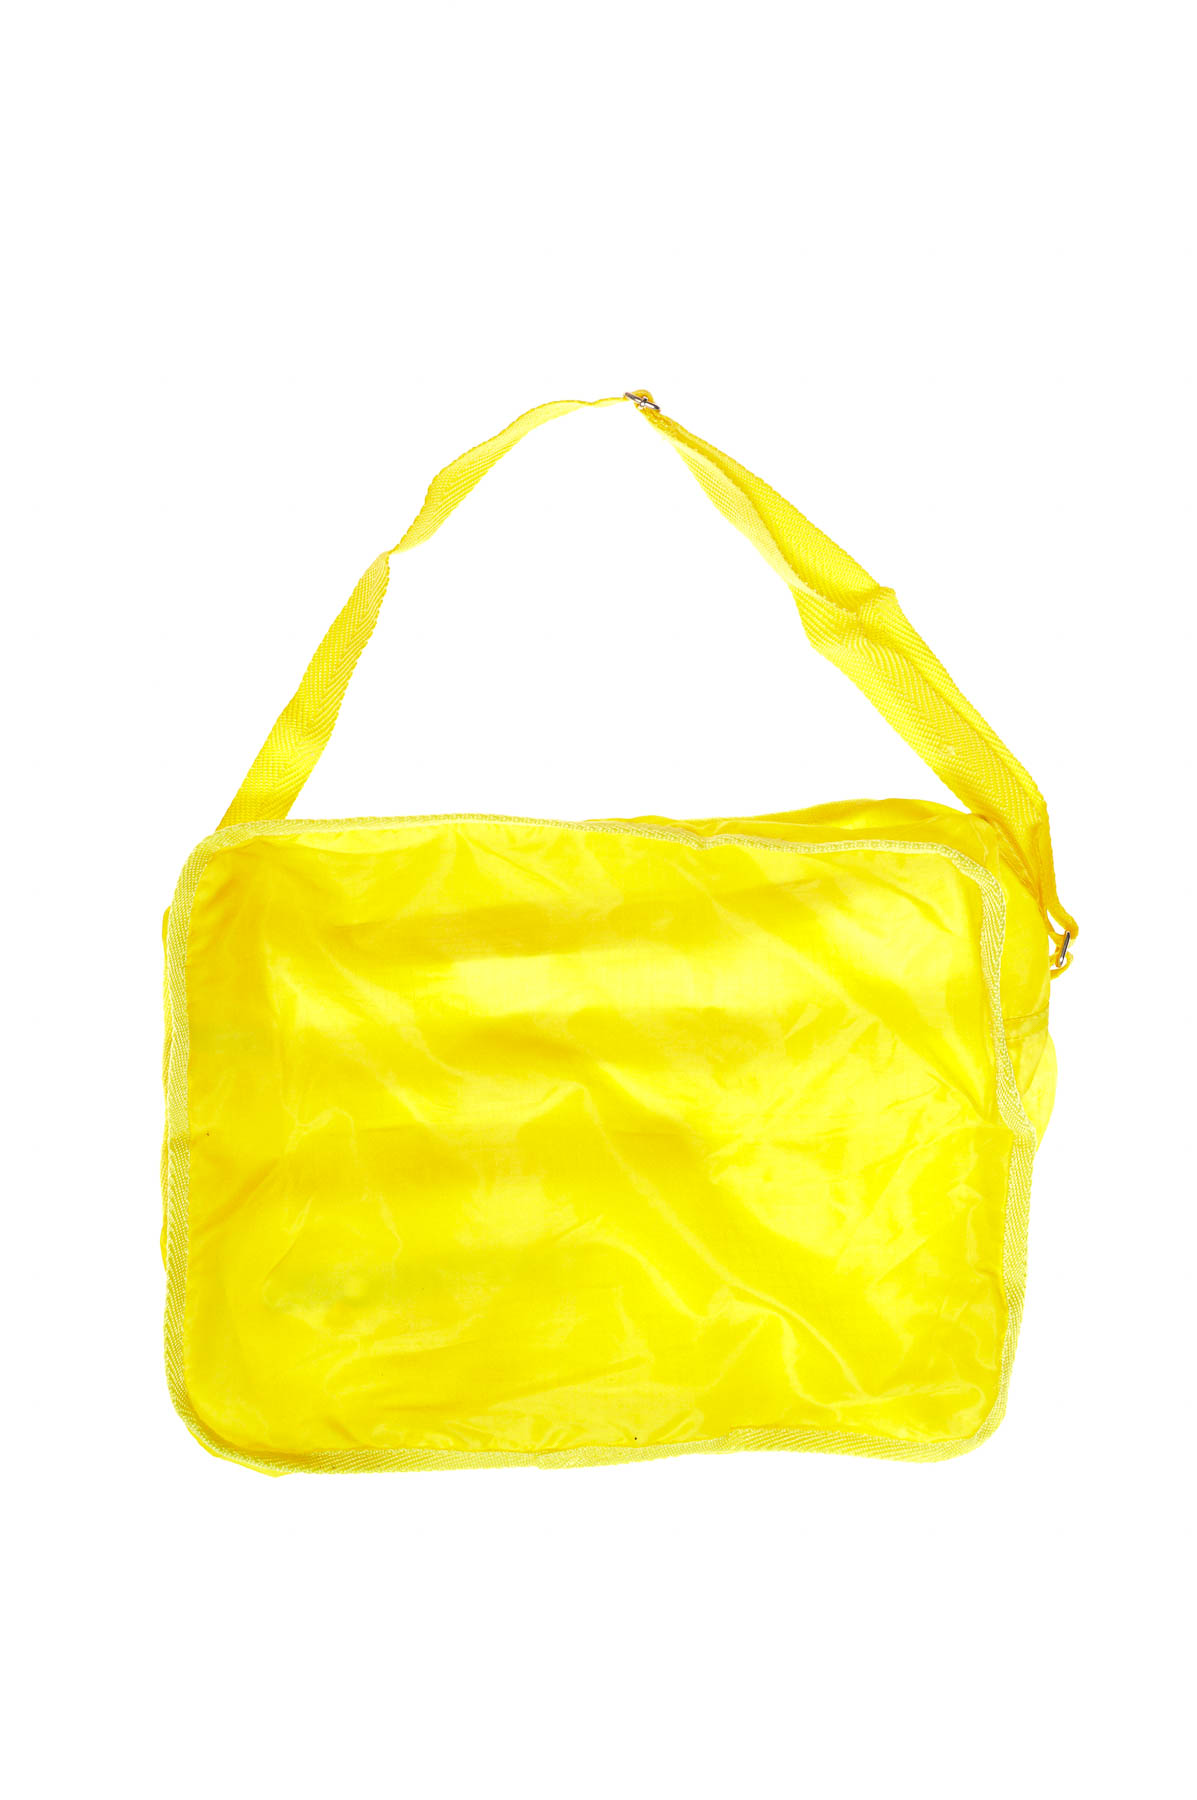 Shopping bag - 1